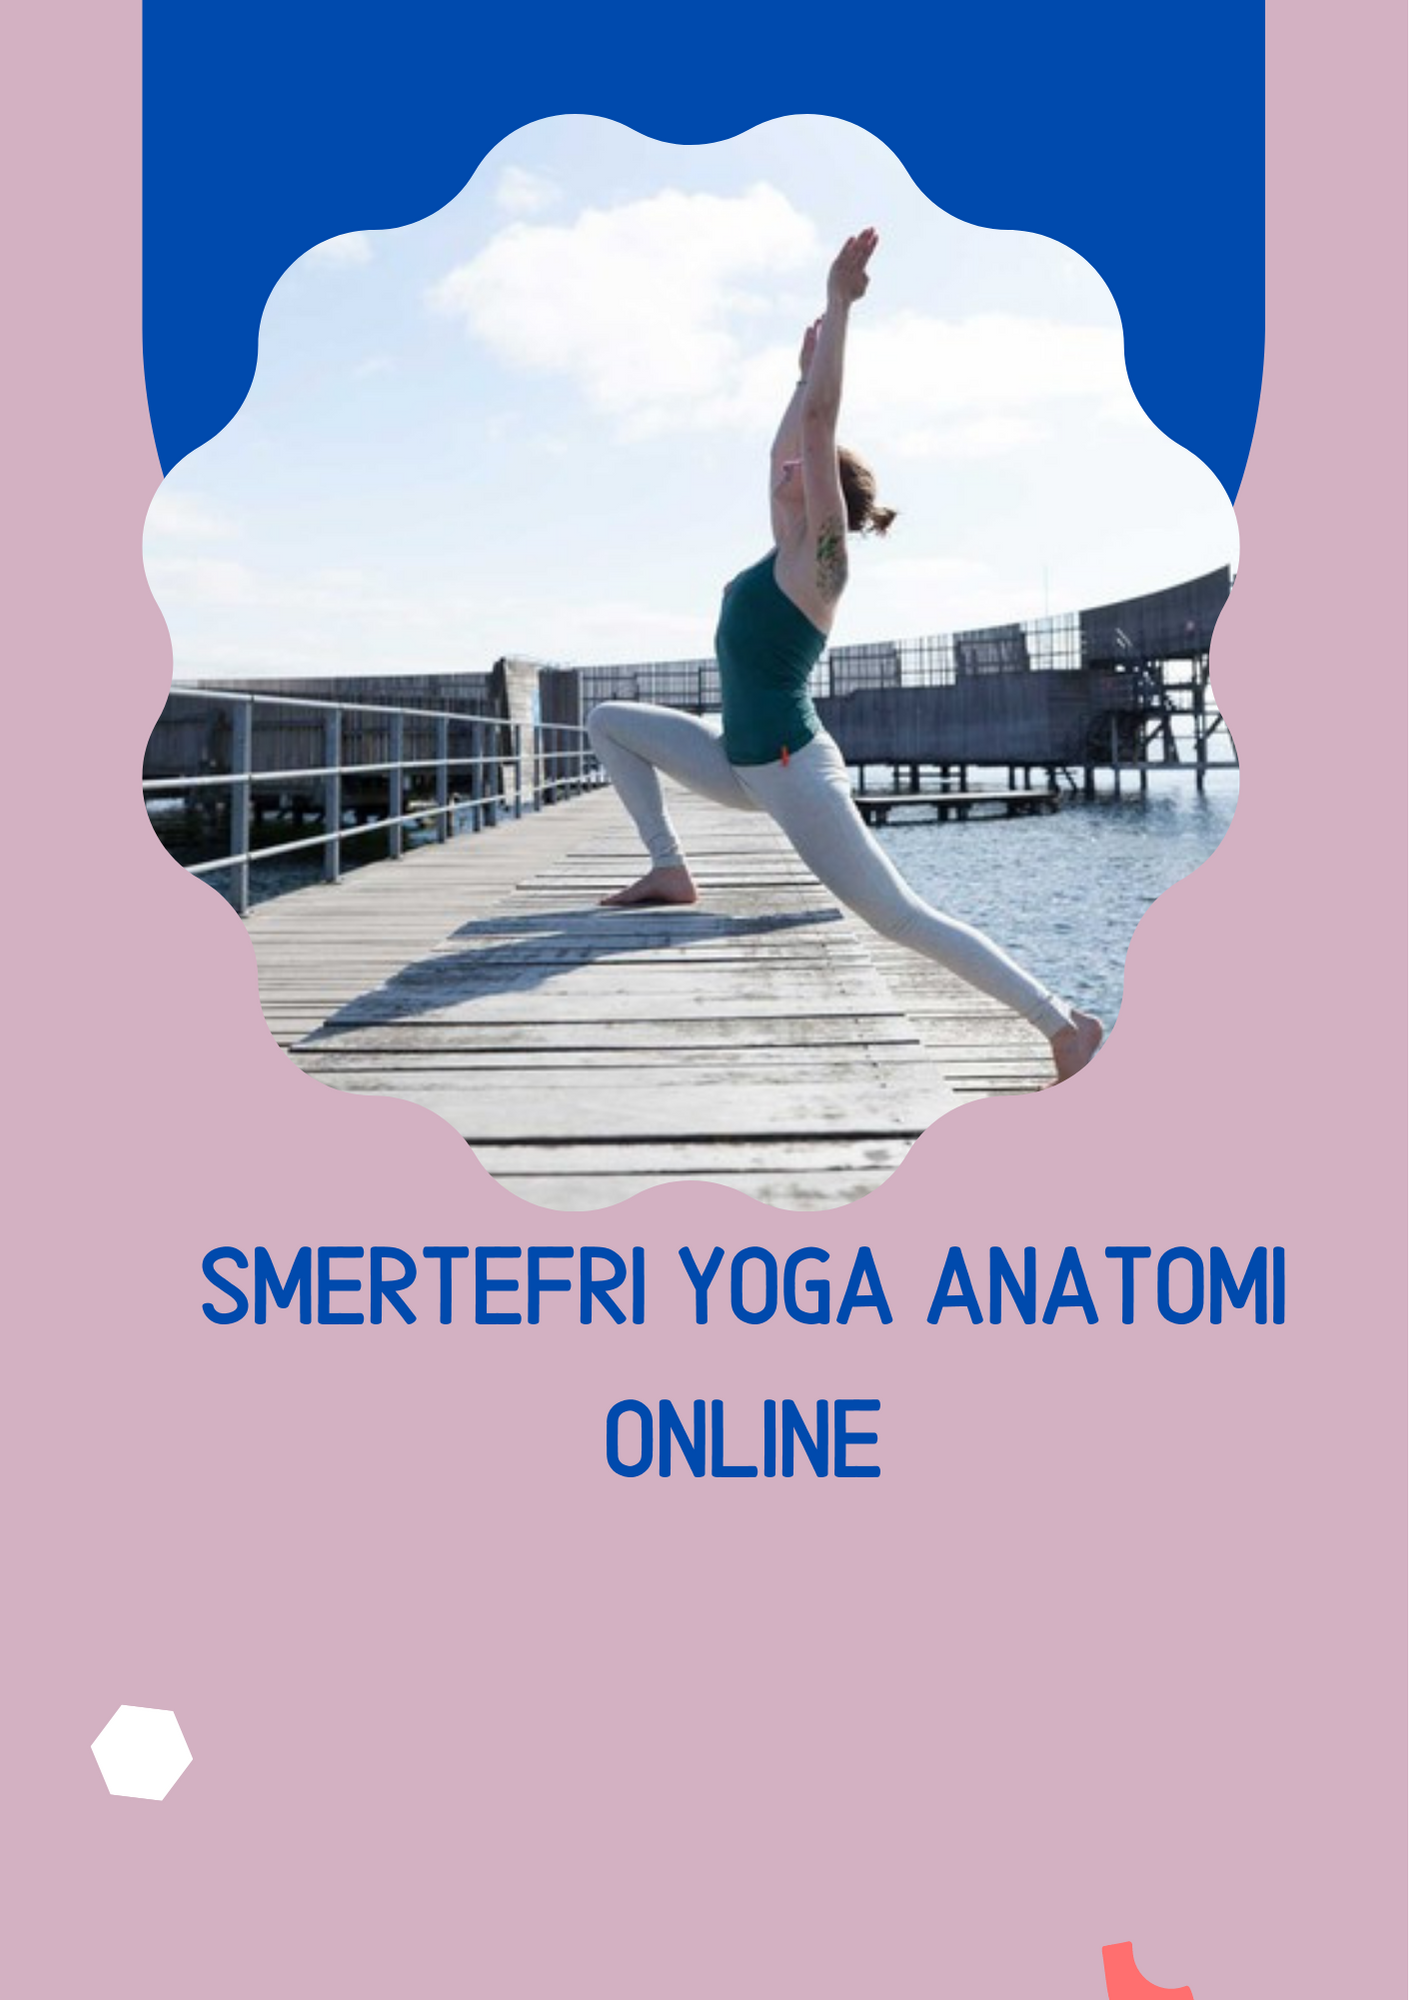 Smertefri Yoga Anatomi (148 × 210mm)